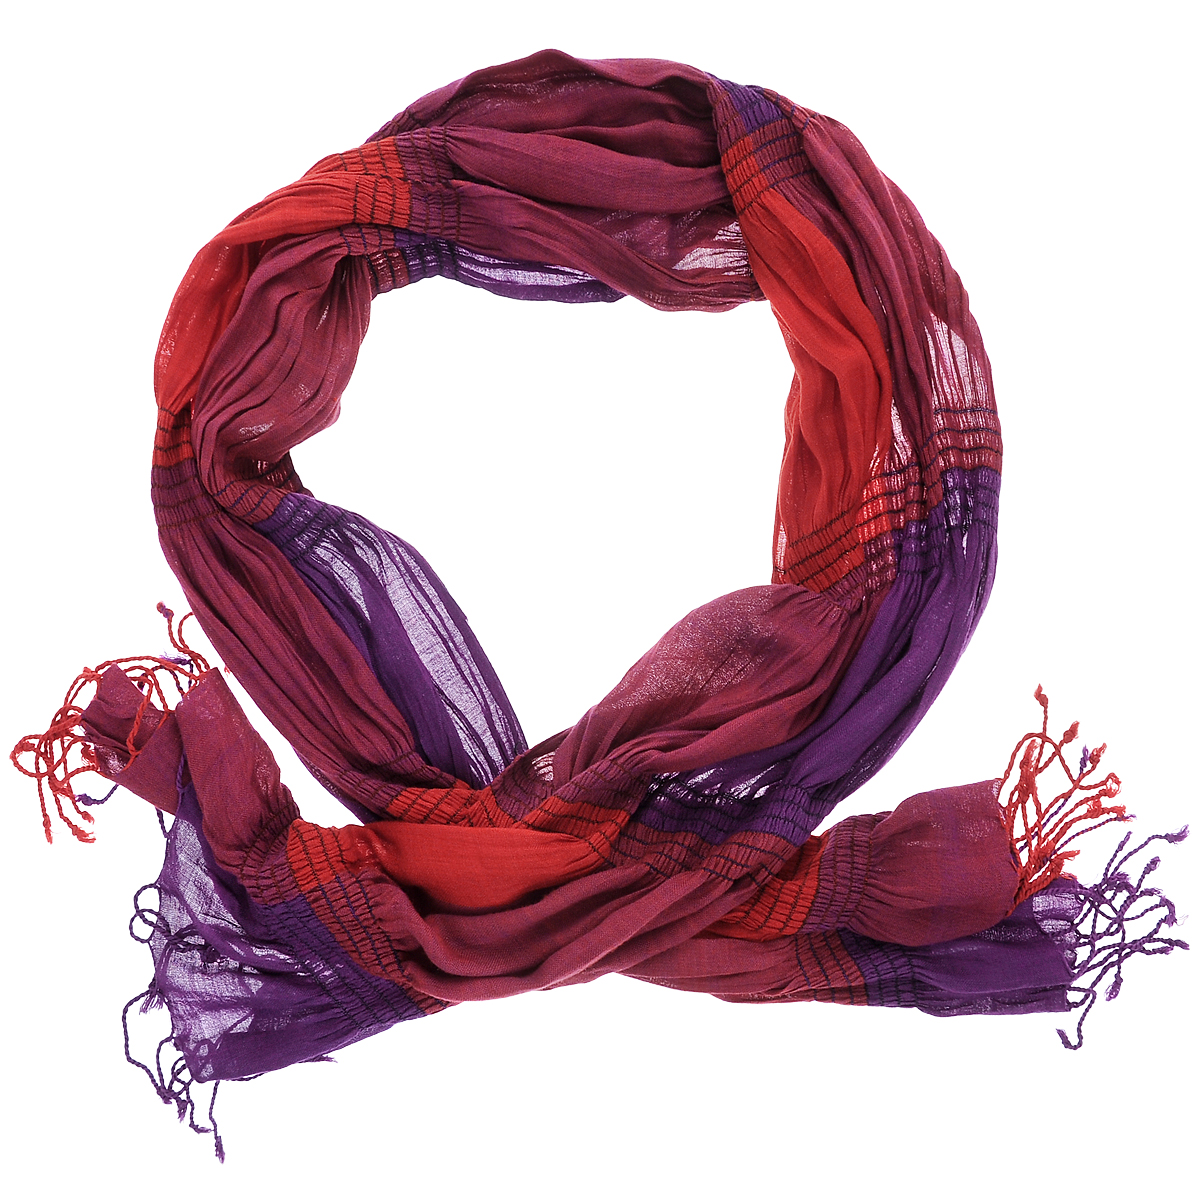 Шарф женский Ethnica, цвет: фиолетовый, кирпичный, вишневый. 288075н. Размер 50 см х 180 см